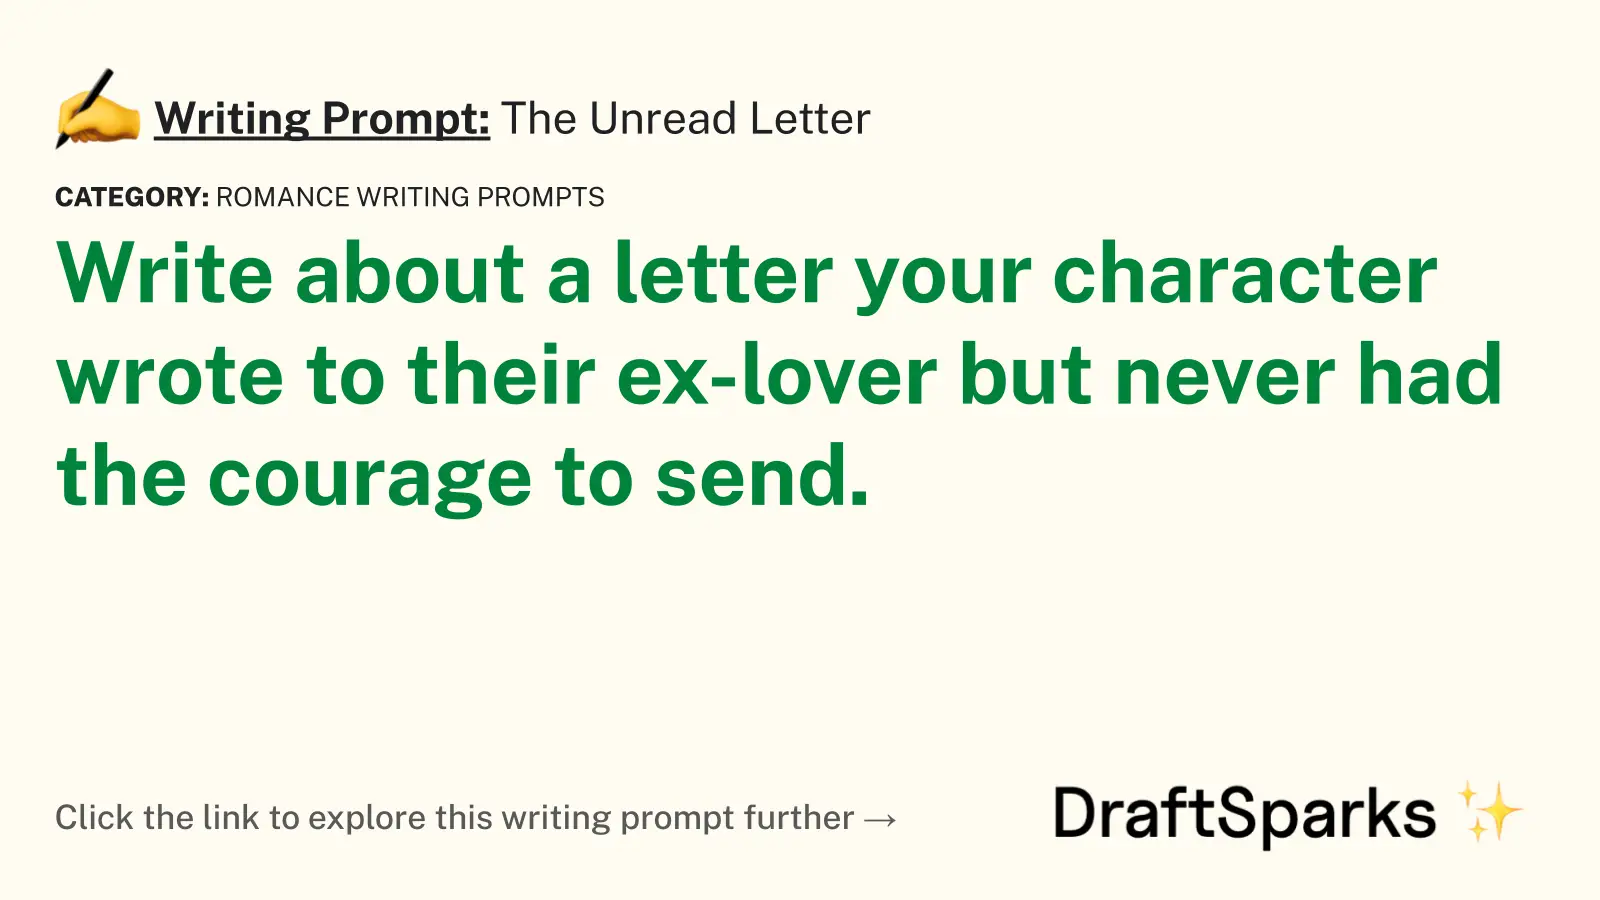 The Unread Letter